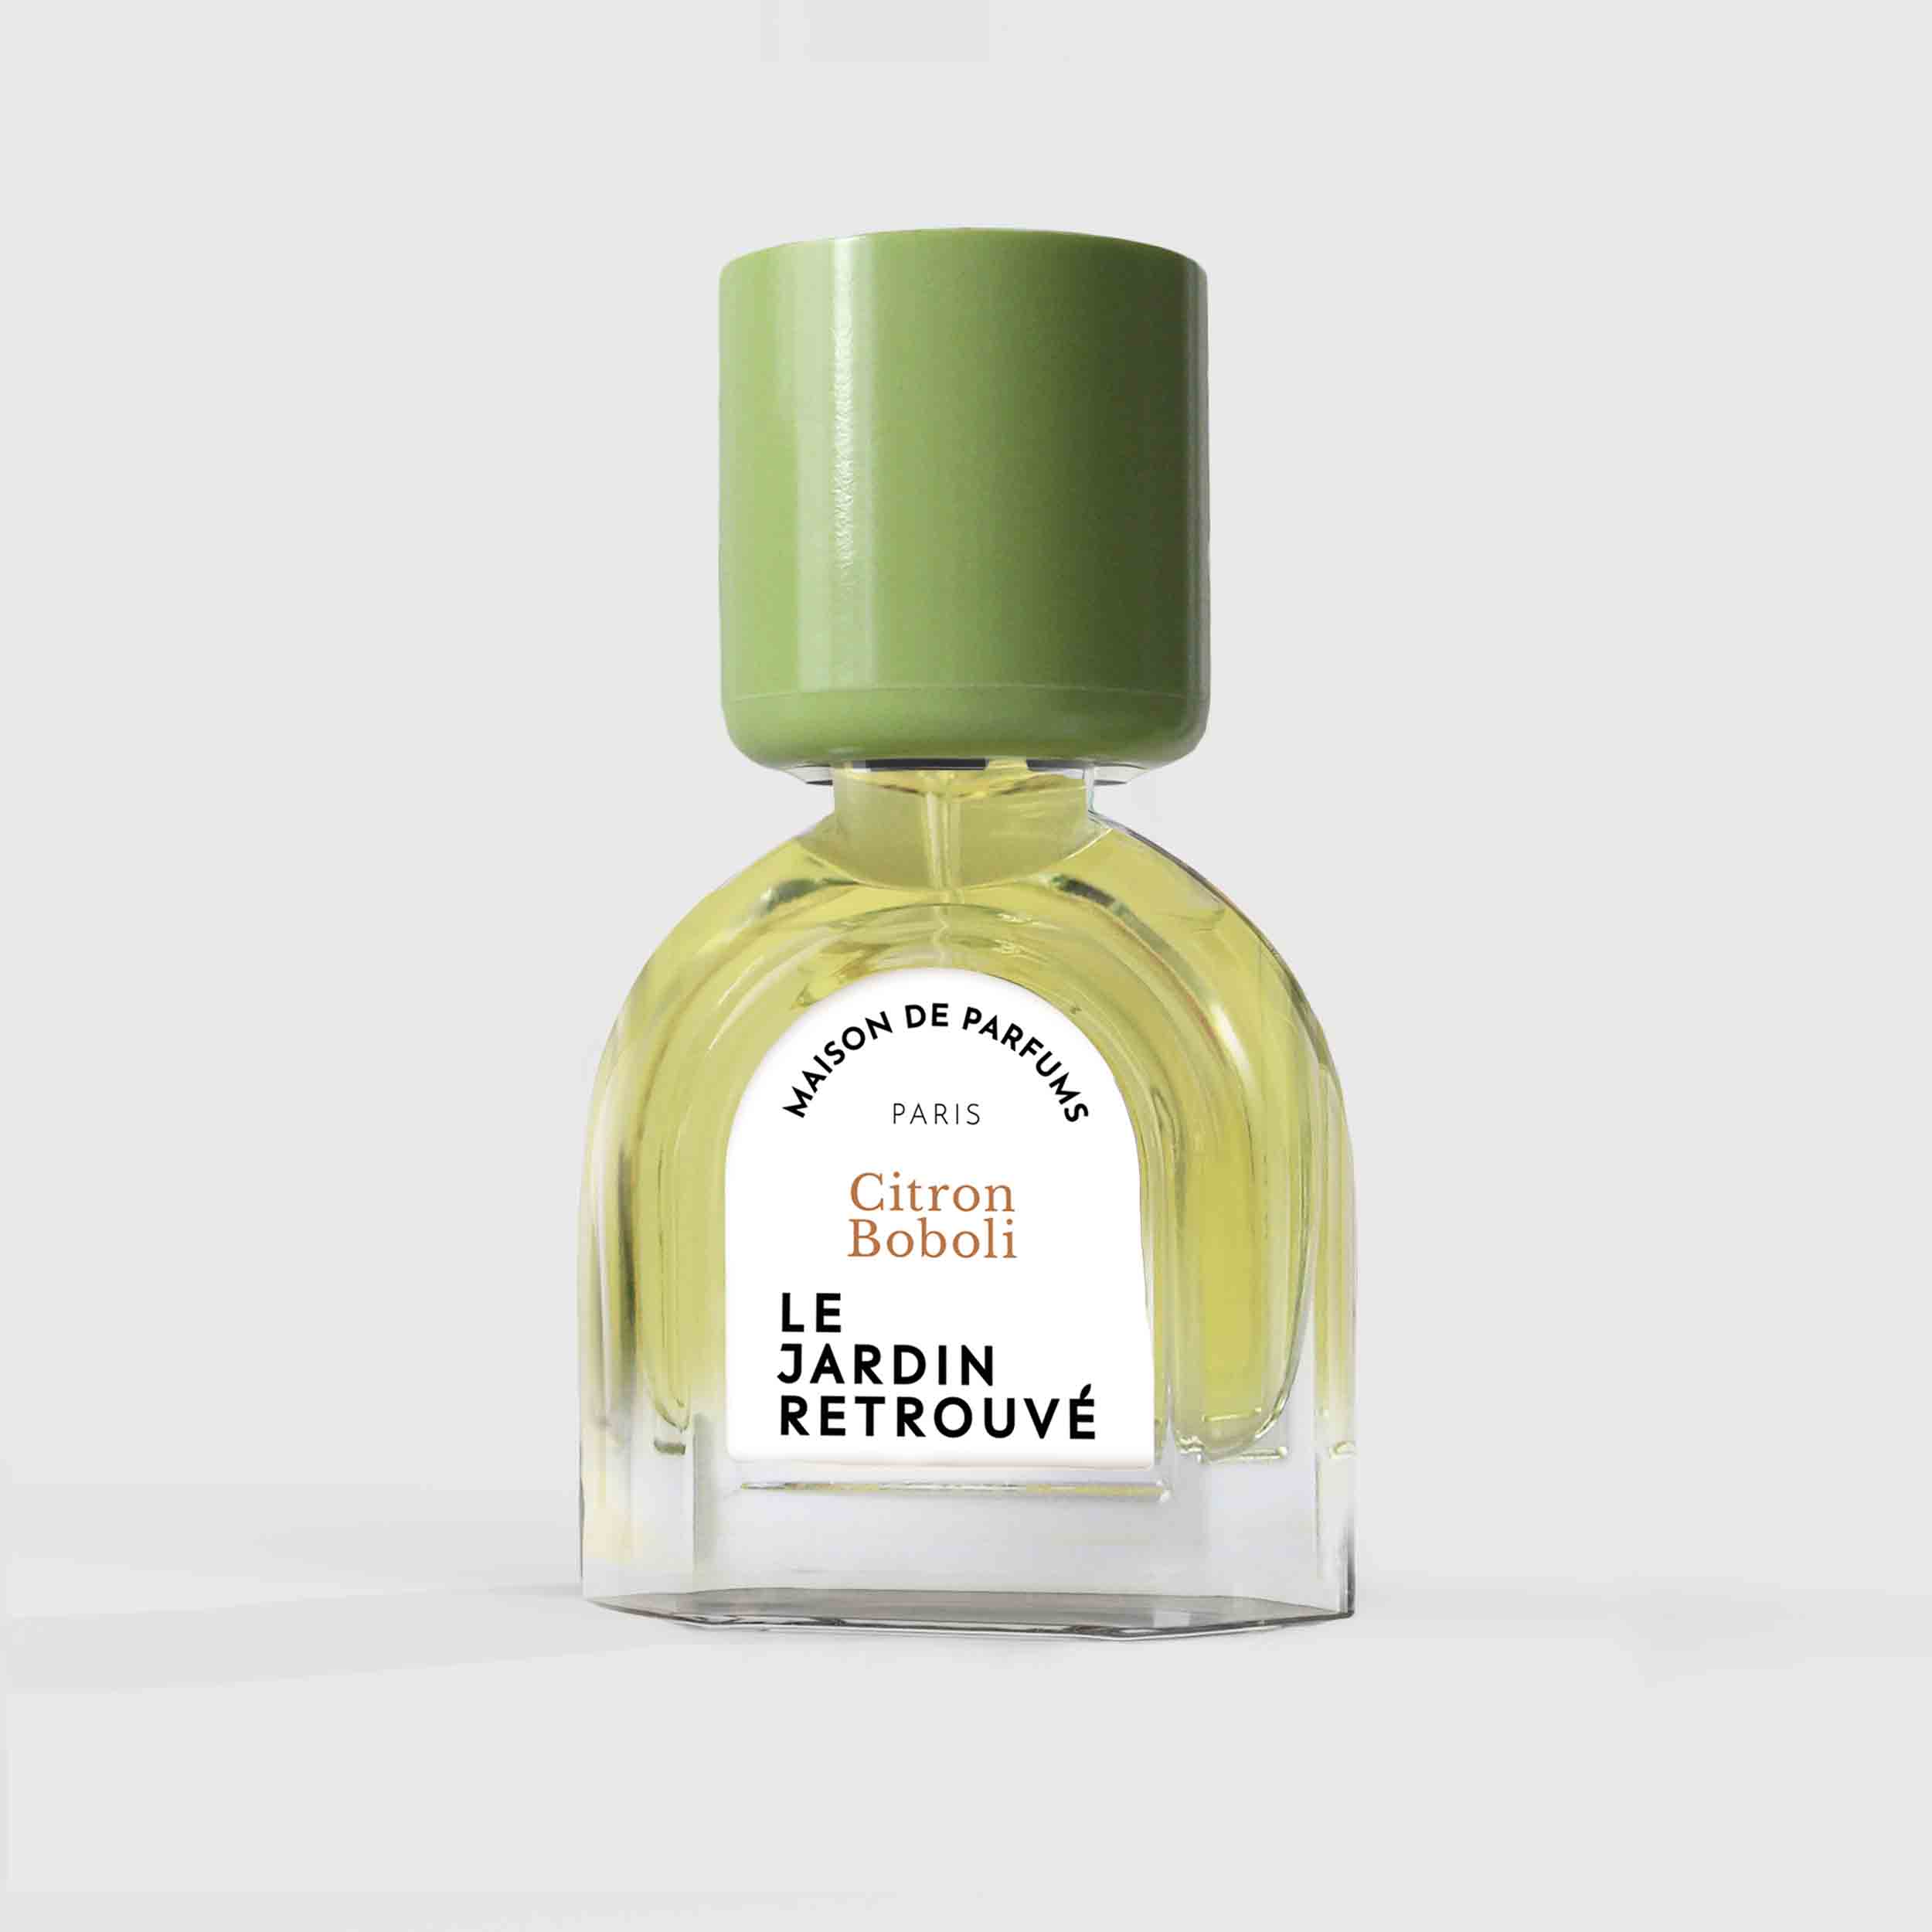 Citron Boboli Eau de Parfum 15ml Bottle by Le Jardin Retrouvé